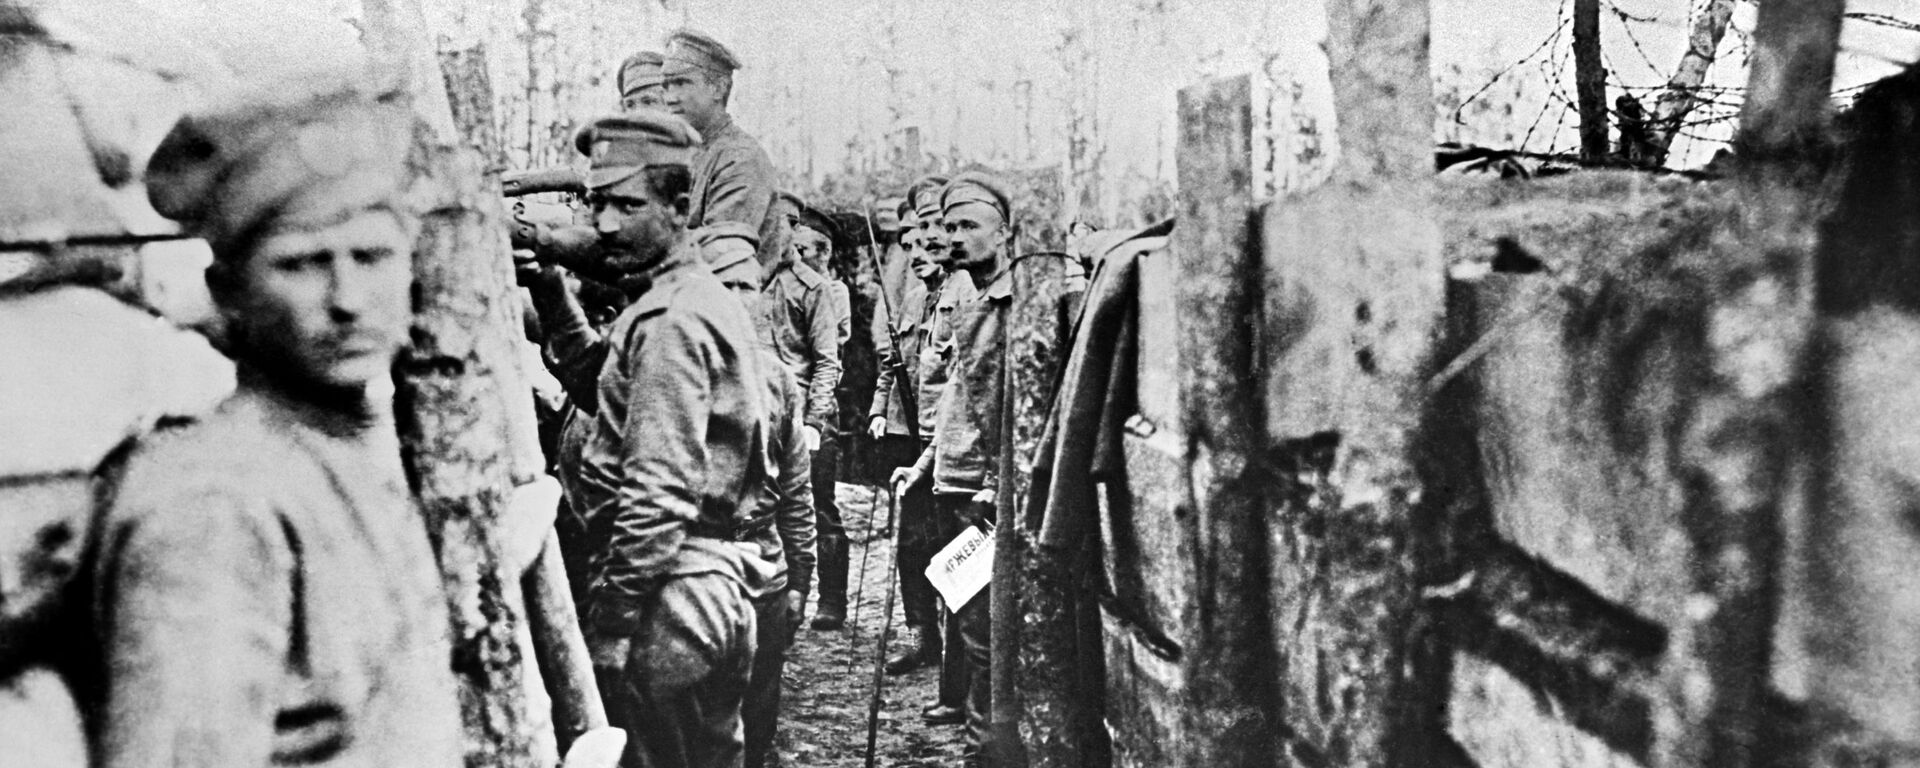 Soldados rusos durante la Primera Guerra Mundial - Sputnik Mundo, 1920, 31.07.2020